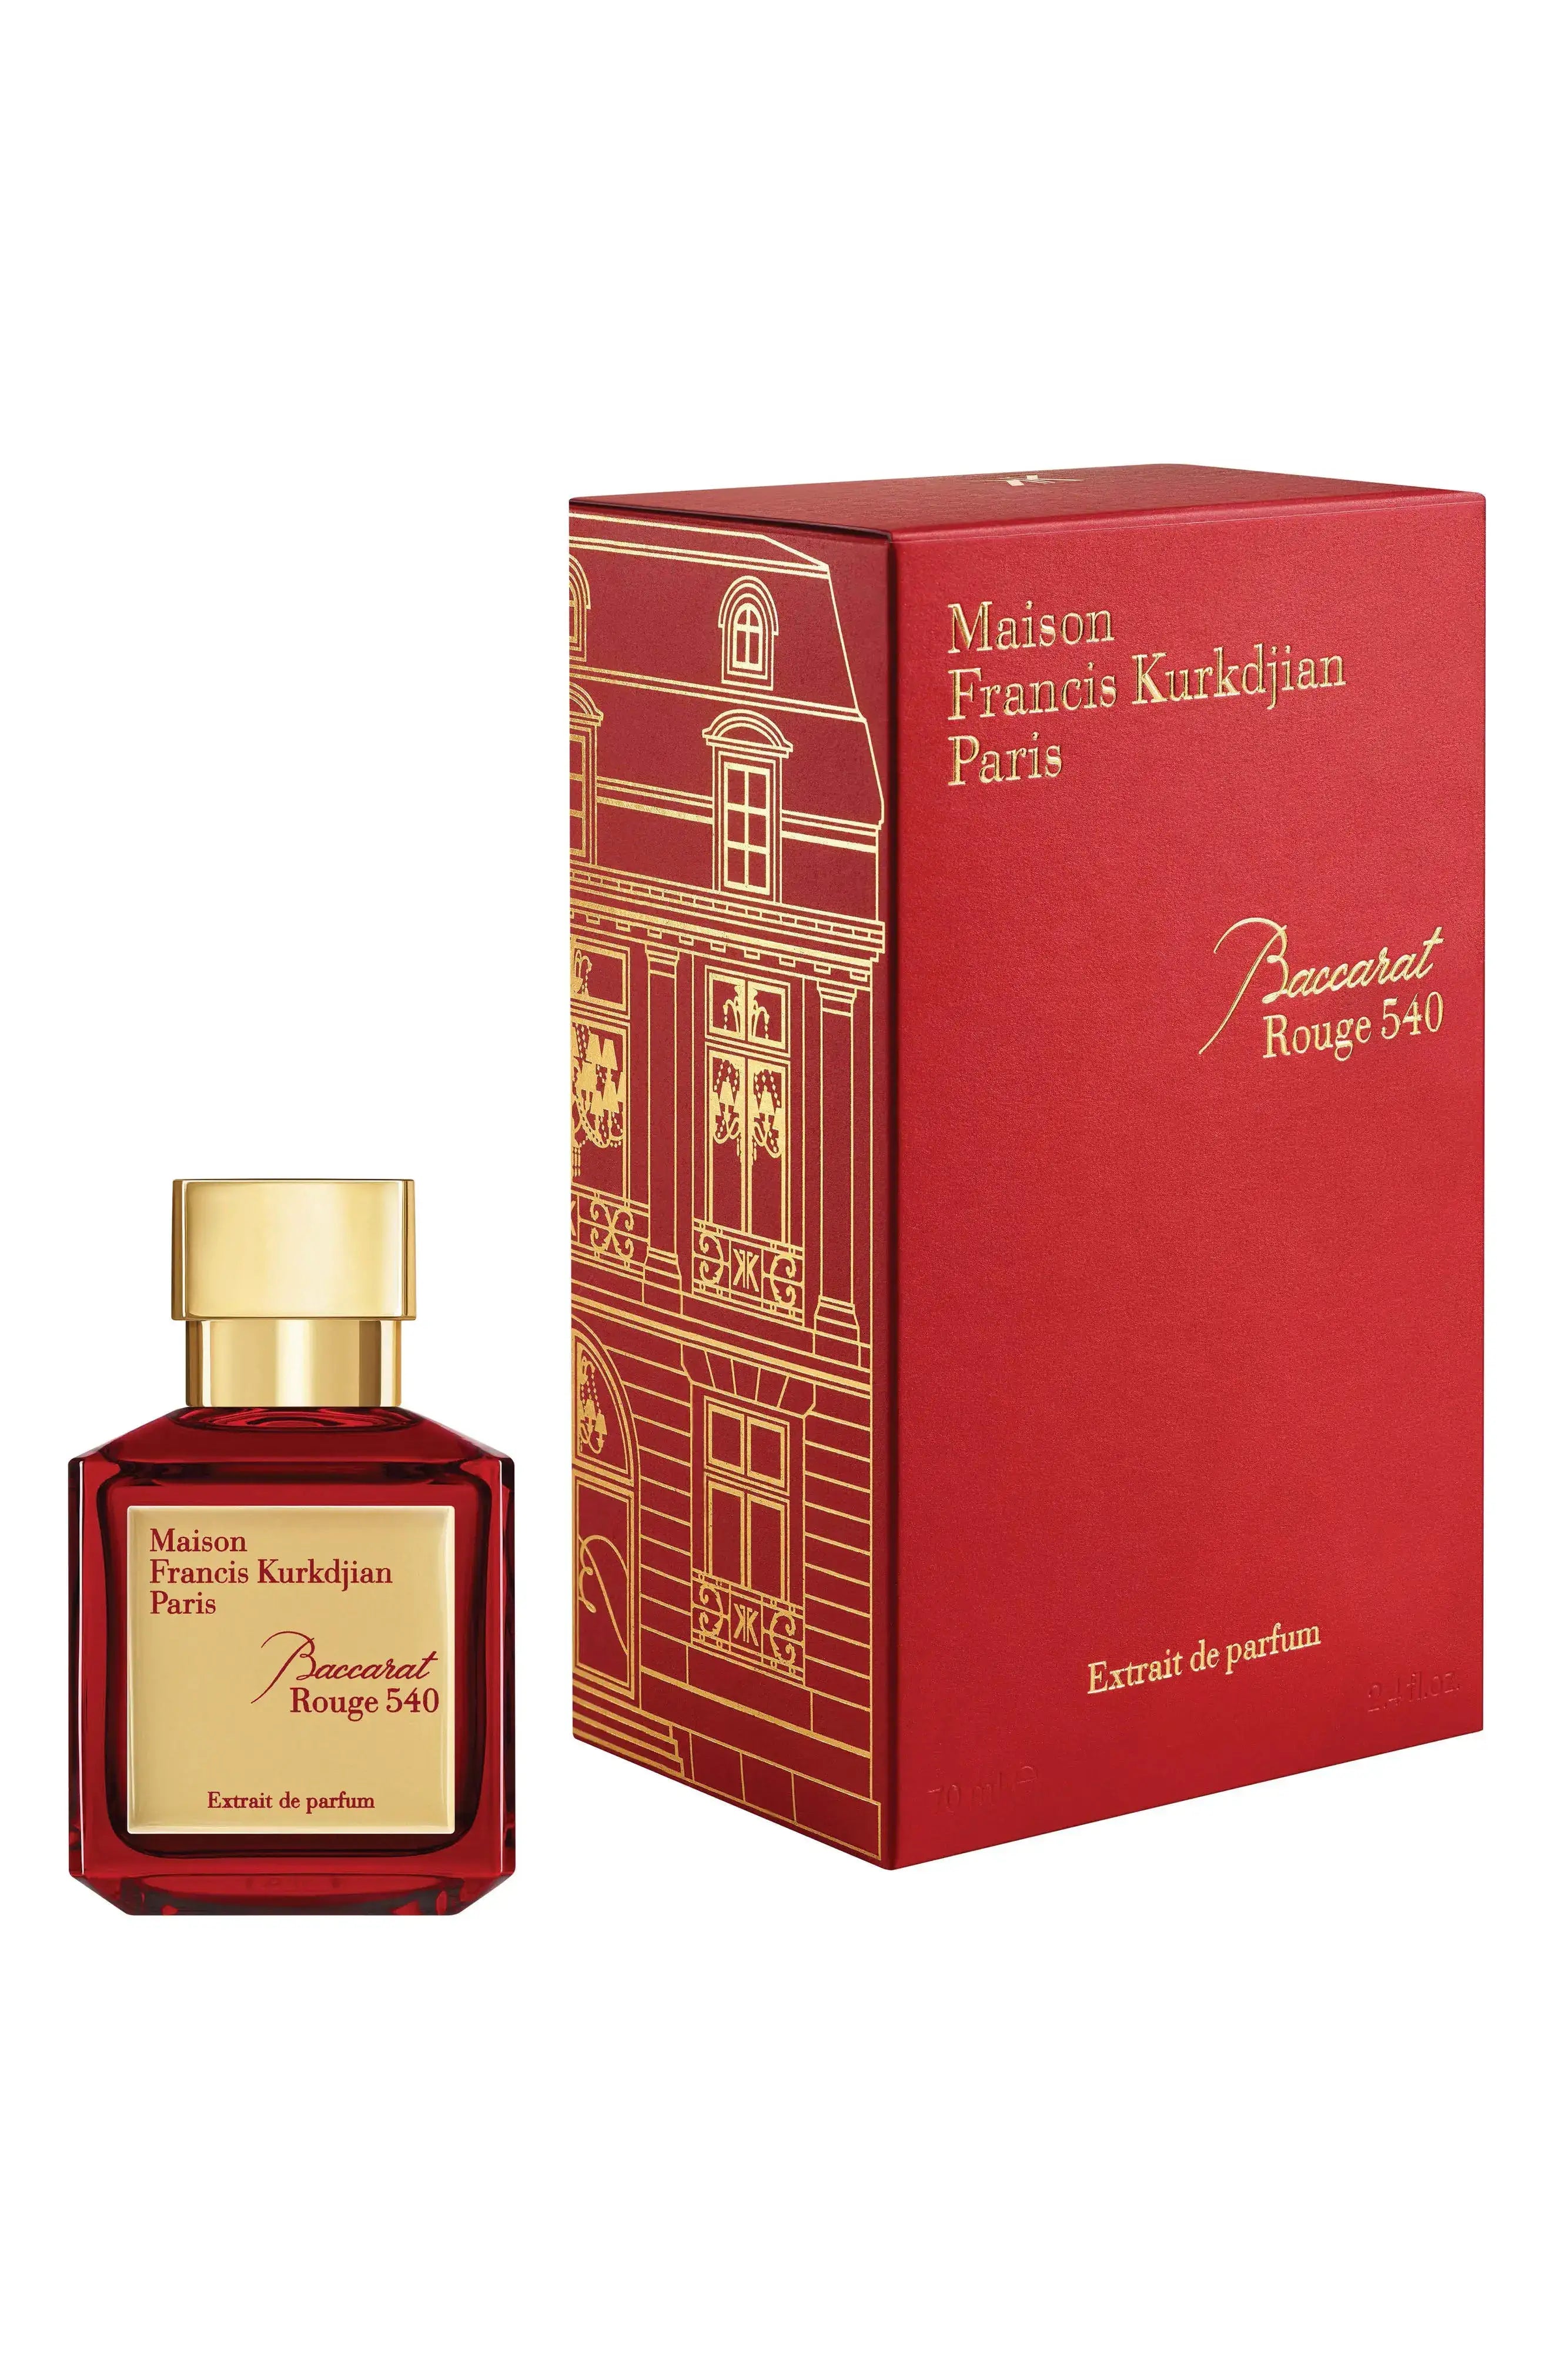 Maison De Paris For Men's and Women Perfume Cologne 3.4 FL OZ. EDP